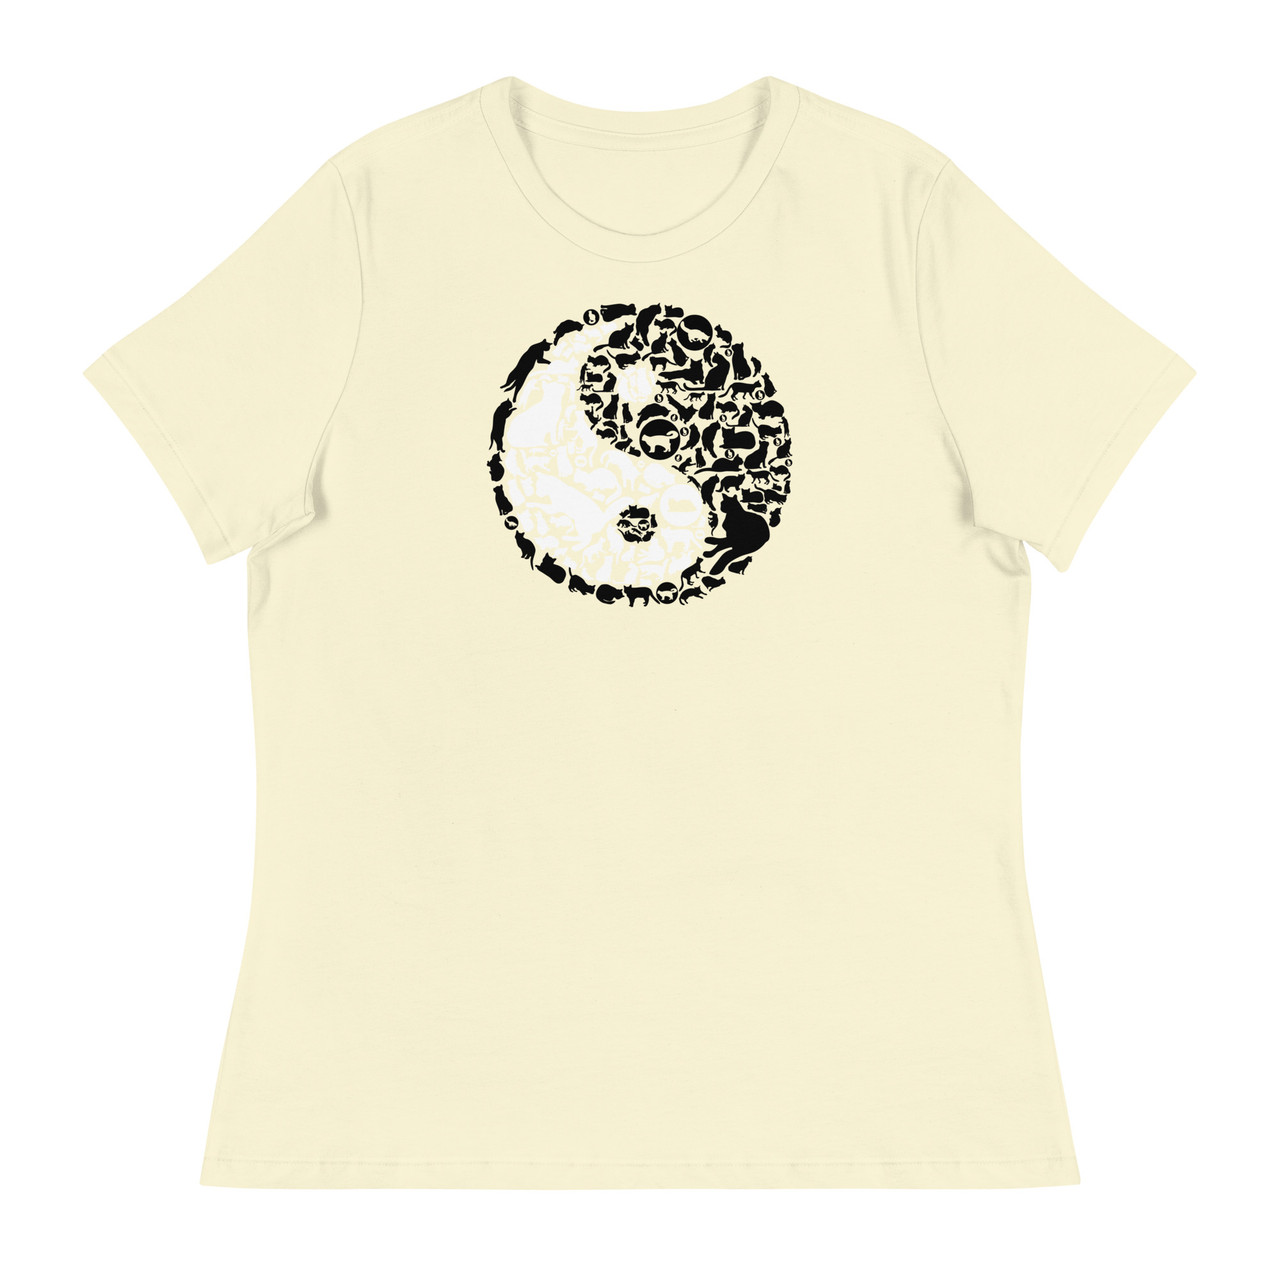 Yin Yang Cat Women's Relaxed T-Shirt - Bella + Canvas 6400 